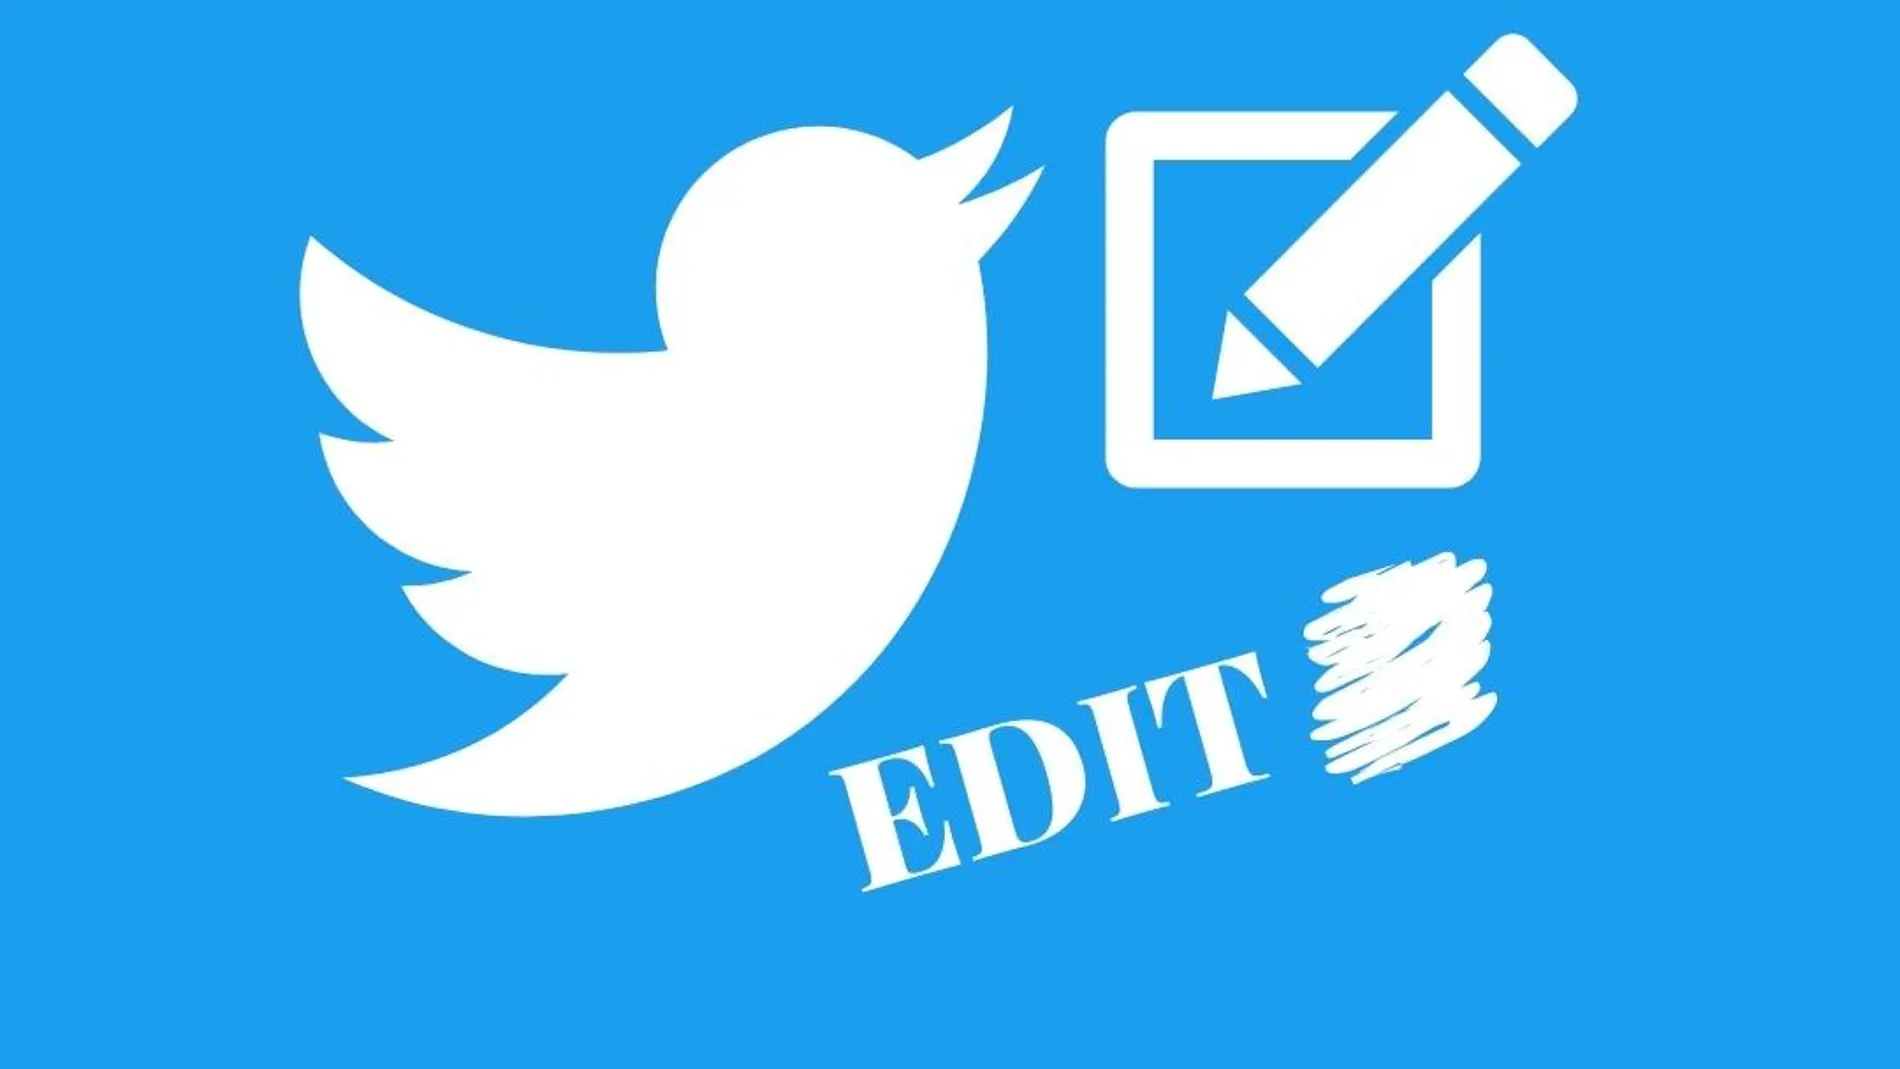 Ya está aquí el nuevo botón “editar tuit”